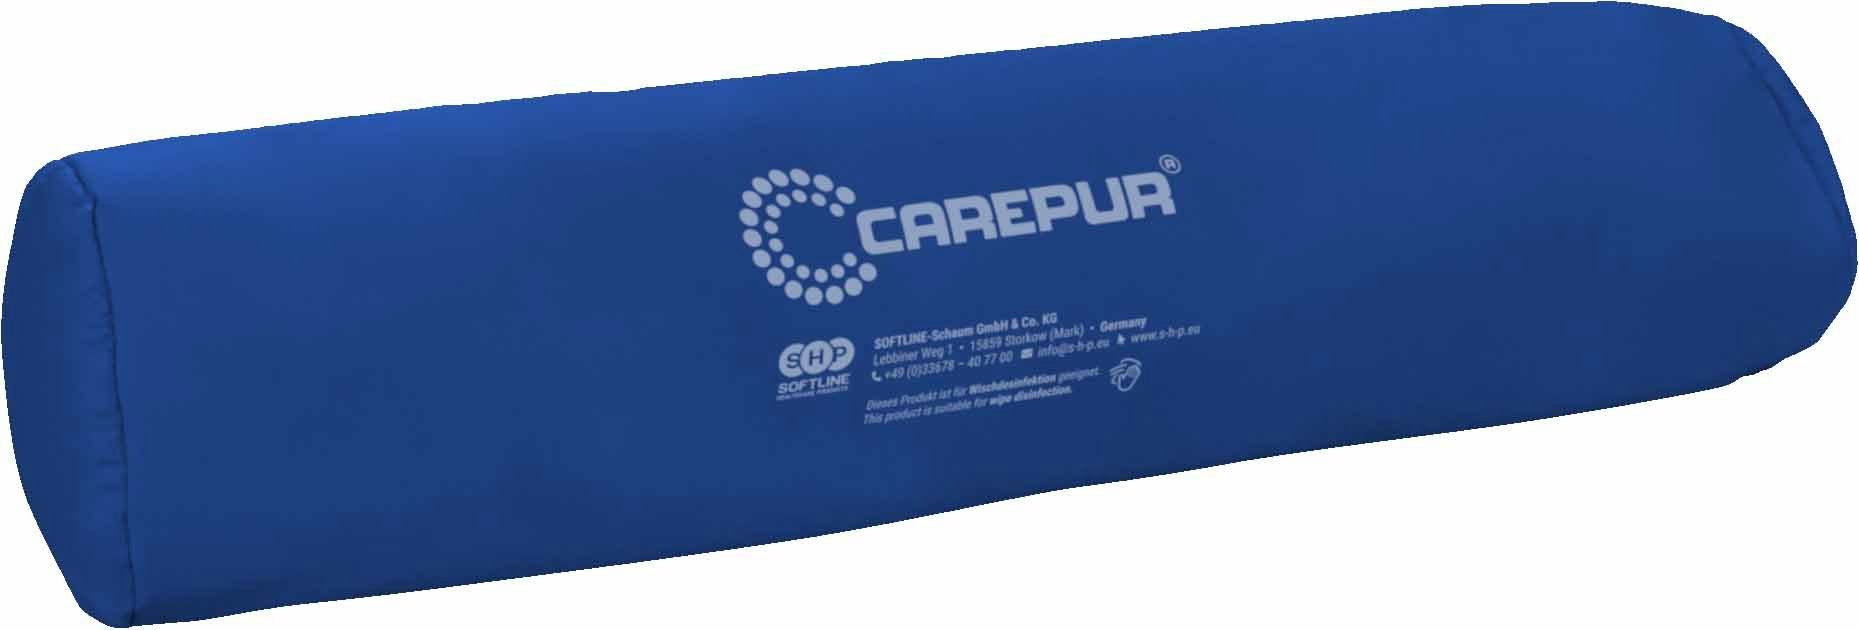 Products CareWave Zylinderkissen Healthcare Softline (Carepur) Lagerungskissen 70x18cm M